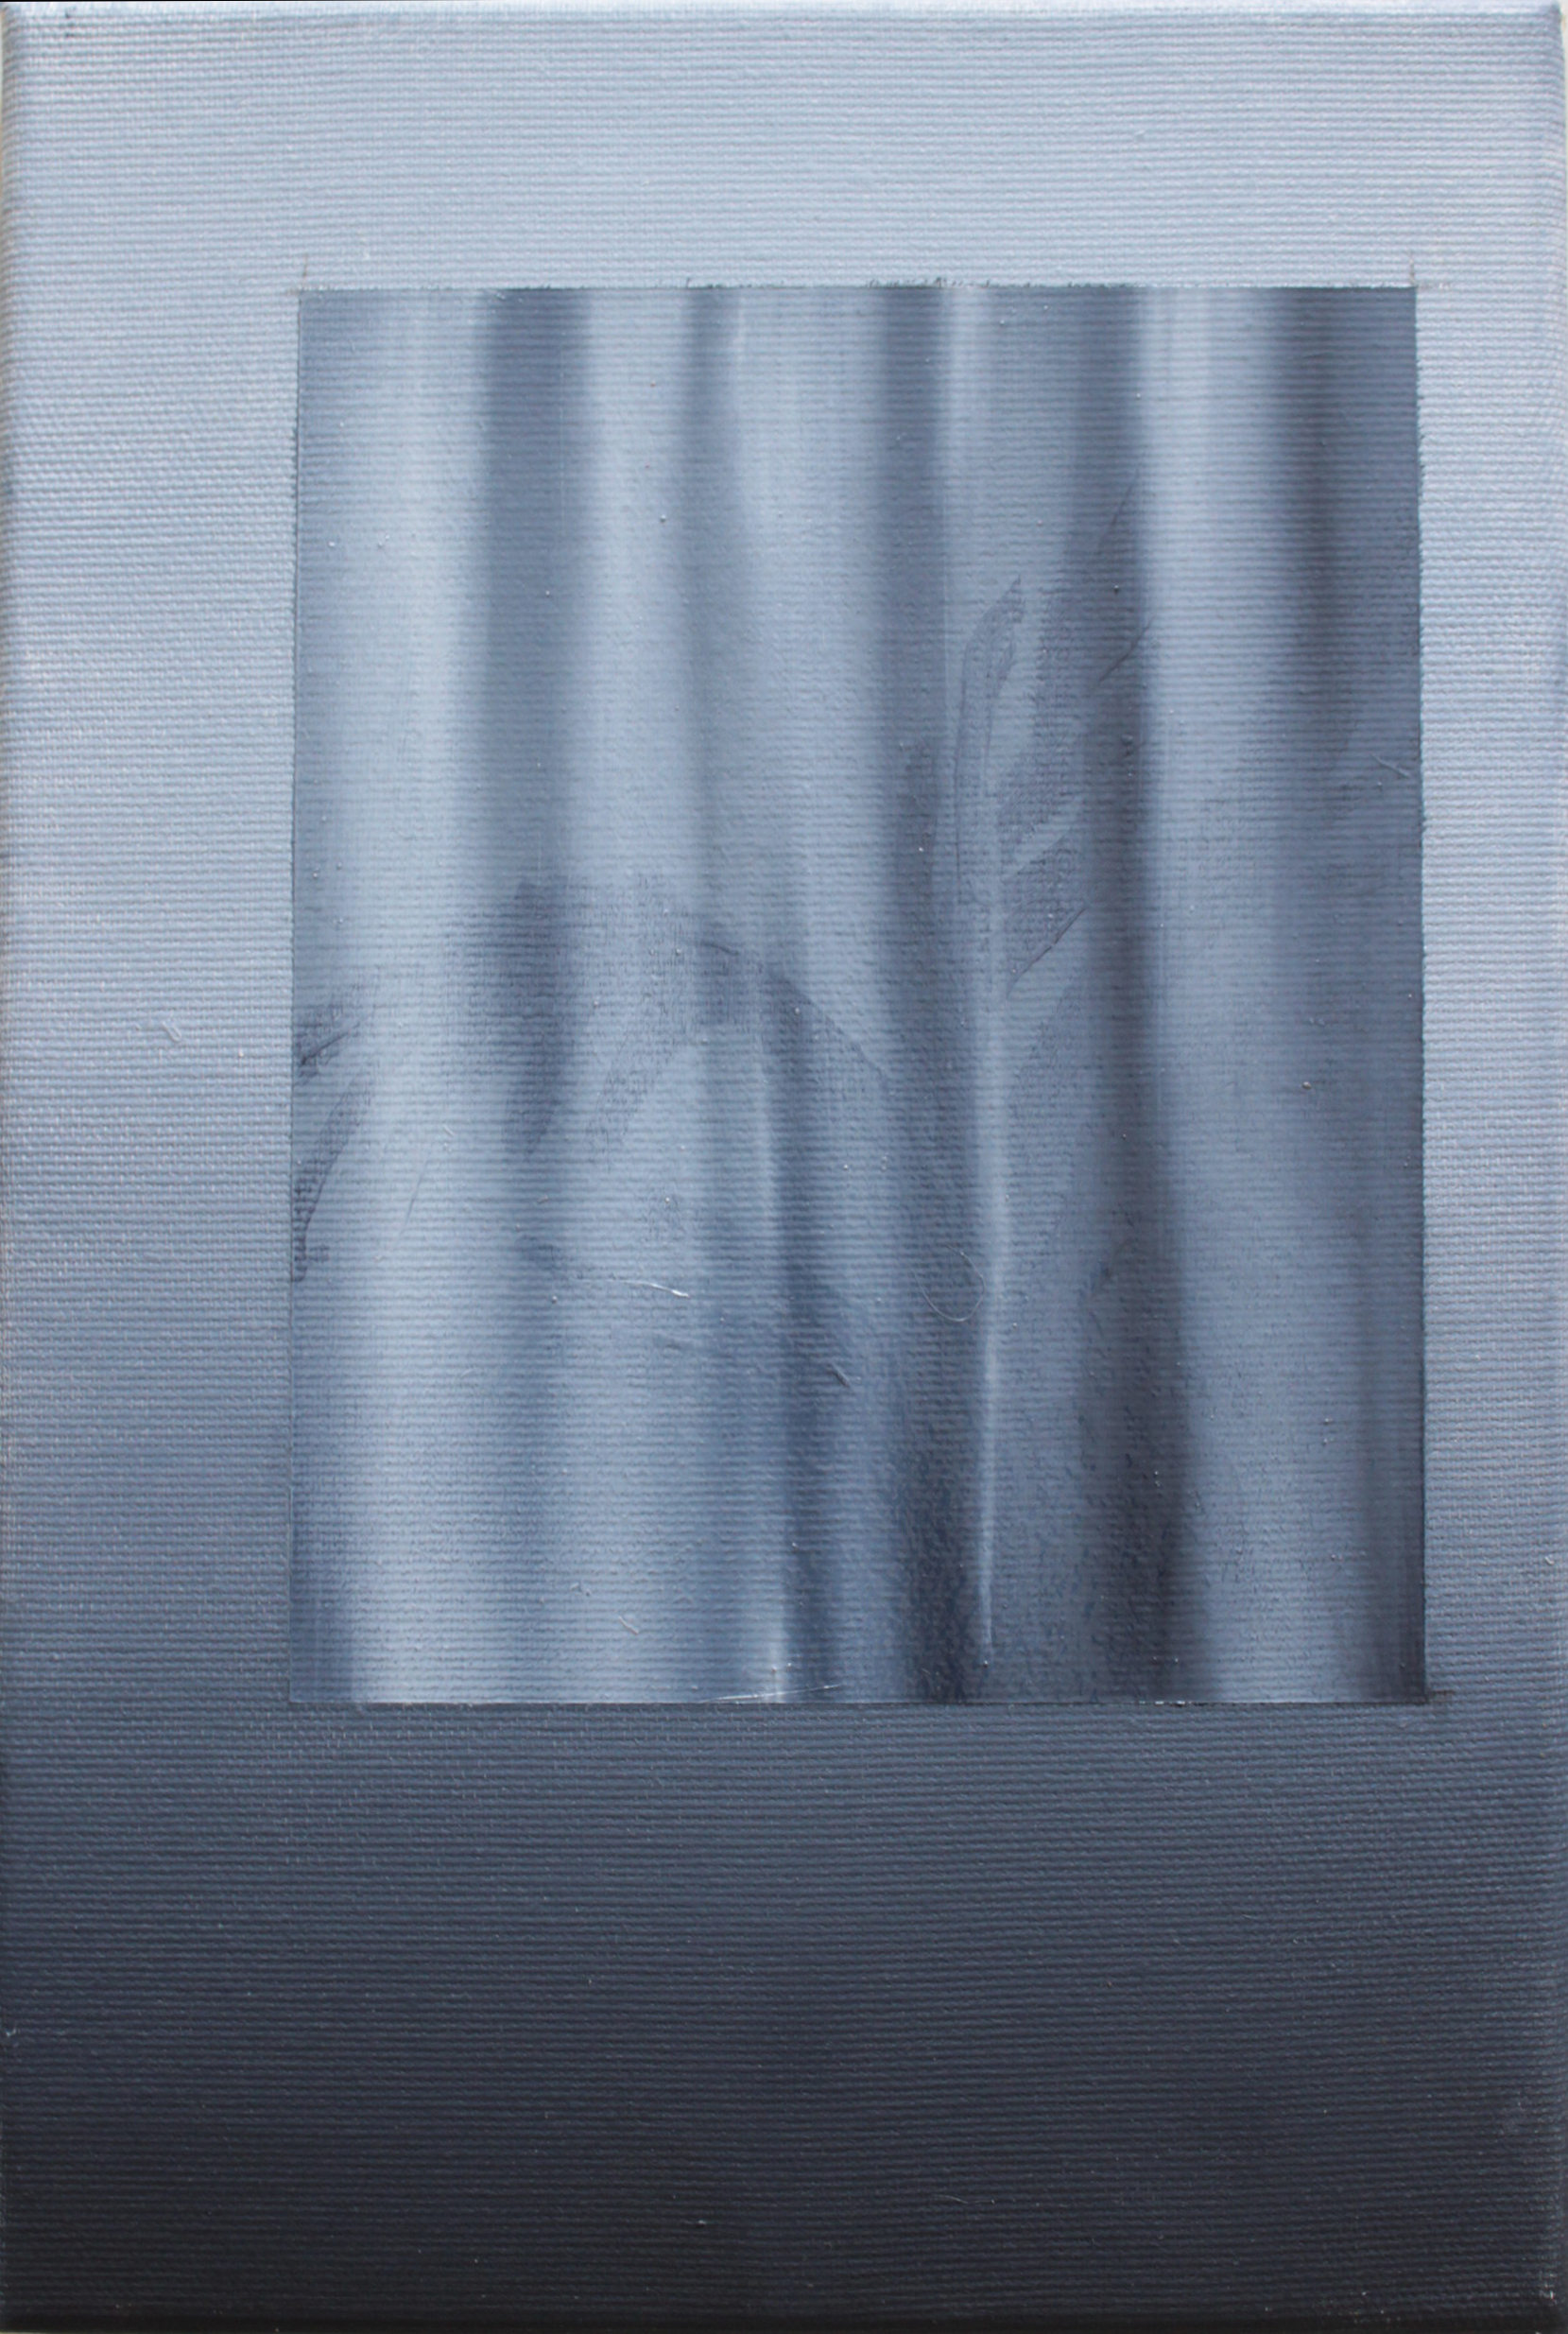 Clément Davout, Il pleut à rayure, 2019, oil on canvas, 30 x 20 cm